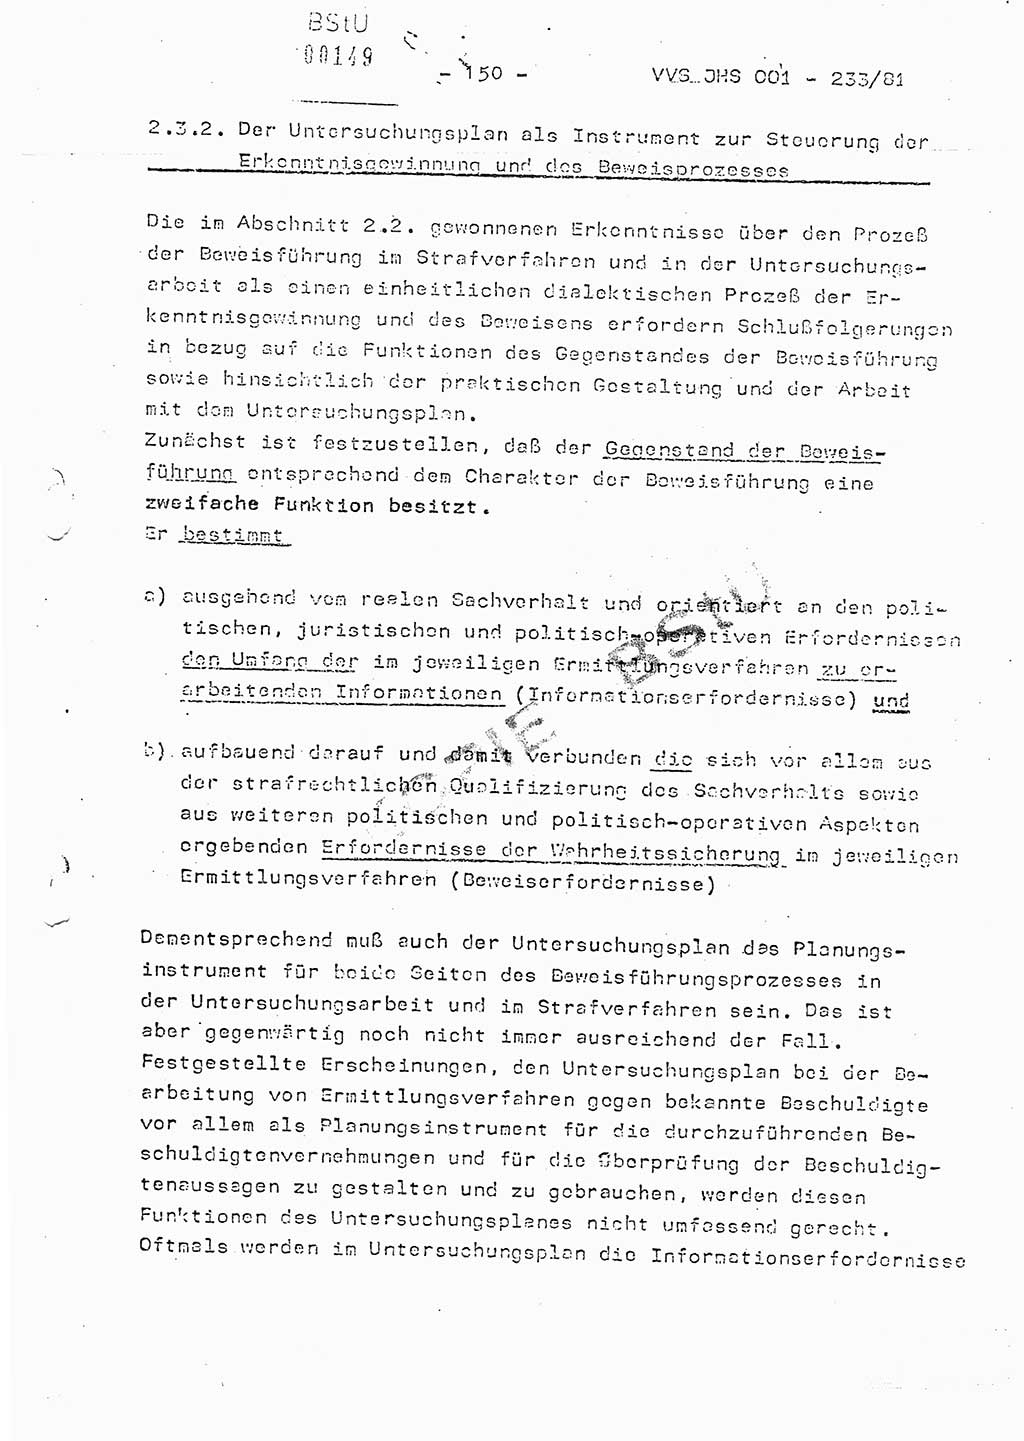 Dissertation Oberstleutnant Horst Zank (JHS), Oberstleutnant Dr. Karl-Heinz Knoblauch (JHS), Oberstleutnant Gustav-Adolf Kowalewski (HA Ⅸ), Oberstleutnant Wolfgang Plötner (HA Ⅸ), Ministerium für Staatssicherheit (MfS) [Deutsche Demokratische Republik (DDR)], Juristische Hochschule (JHS), Vertrauliche Verschlußsache (VVS) o001-233/81, Potsdam 1981, Blatt 150 (Diss. MfS DDR JHS VVS o001-233/81 1981, Bl. 150)